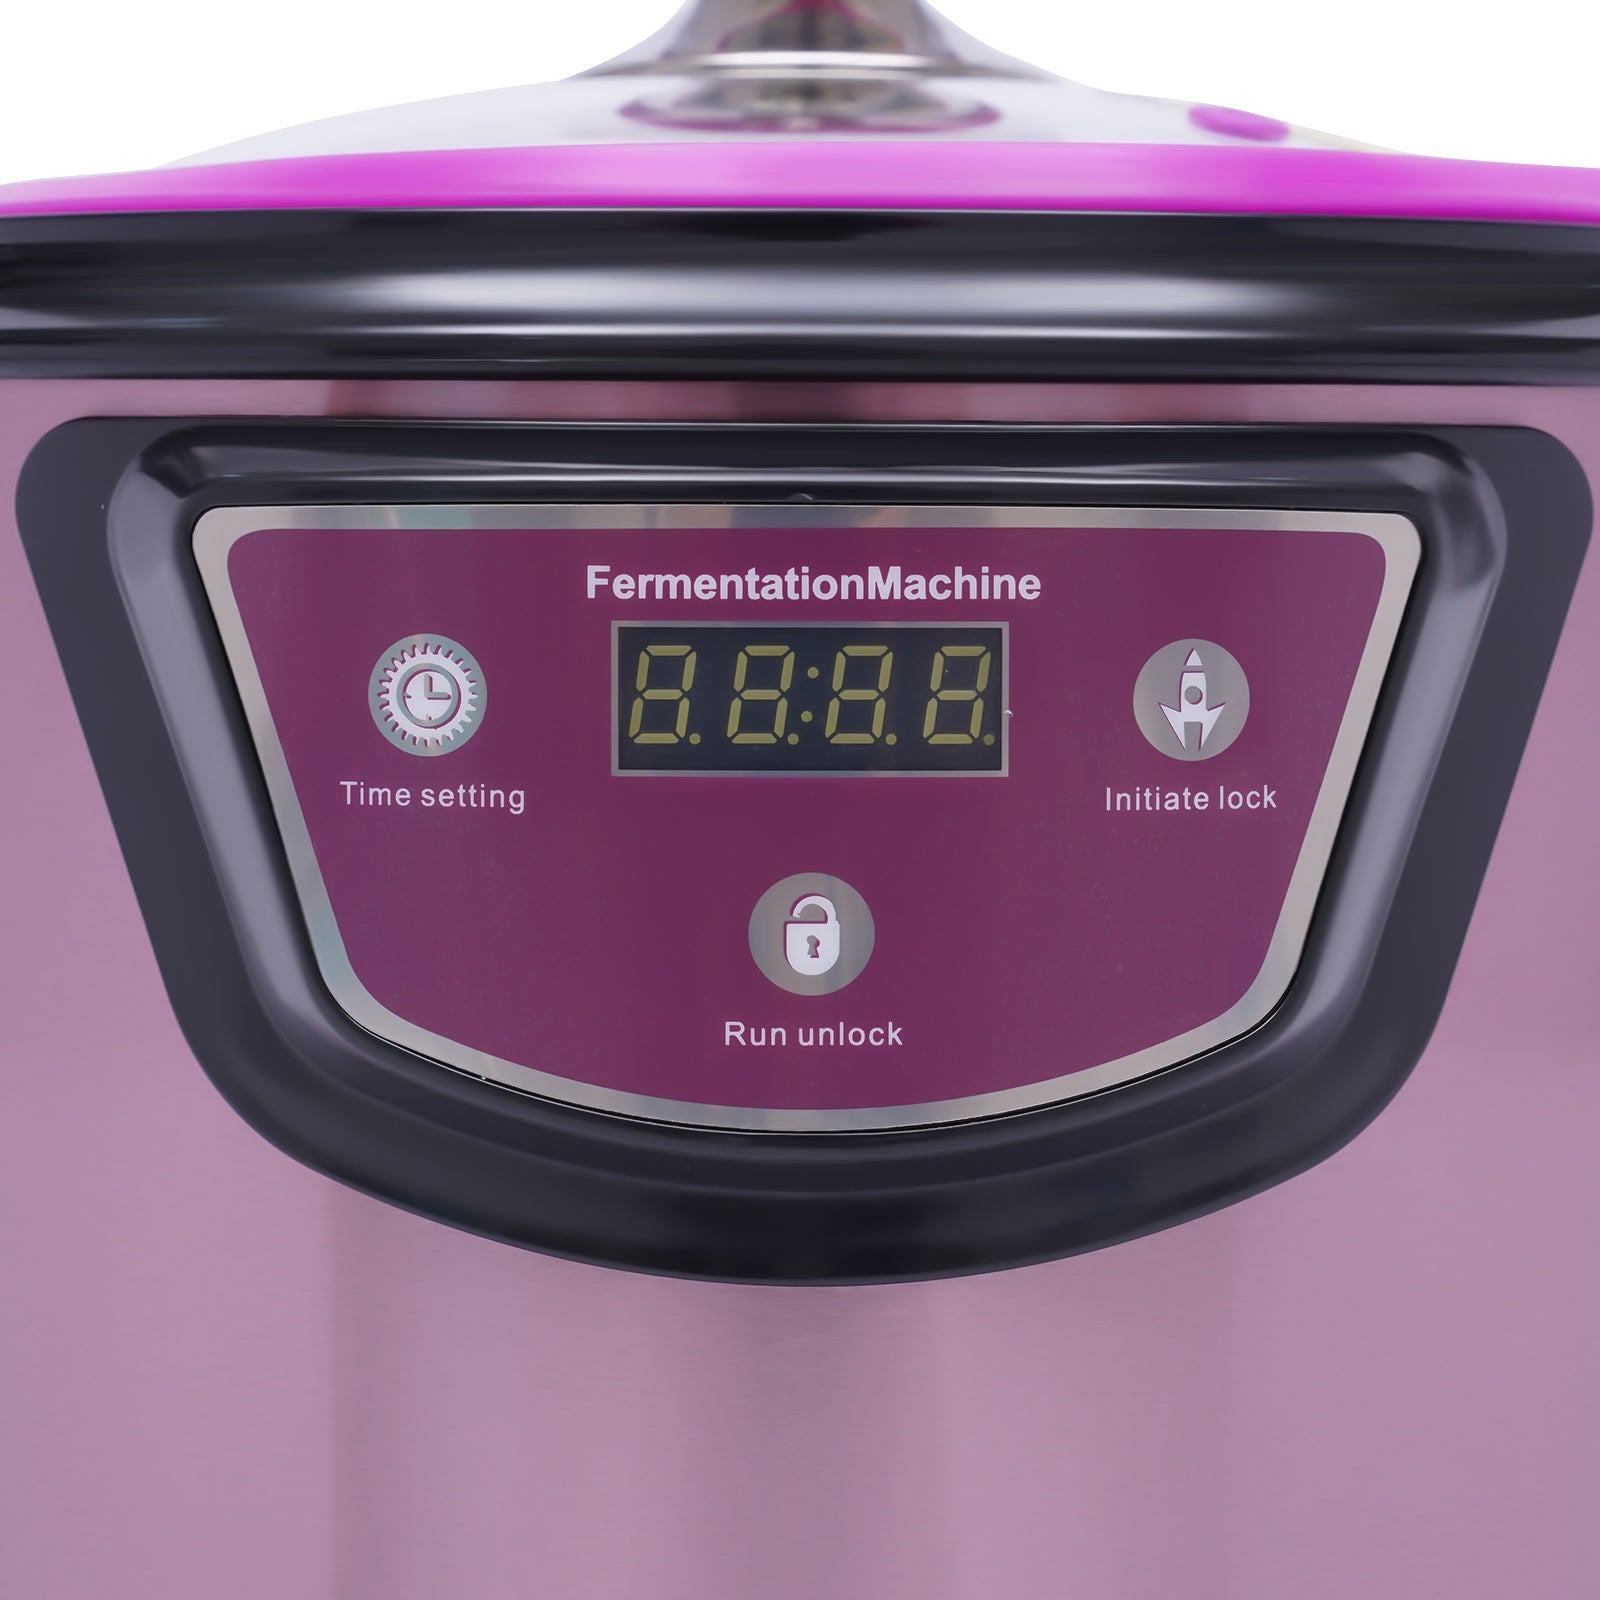 Fermenteur automatique à l'ail noir - Purple - 90 W - Ail noir